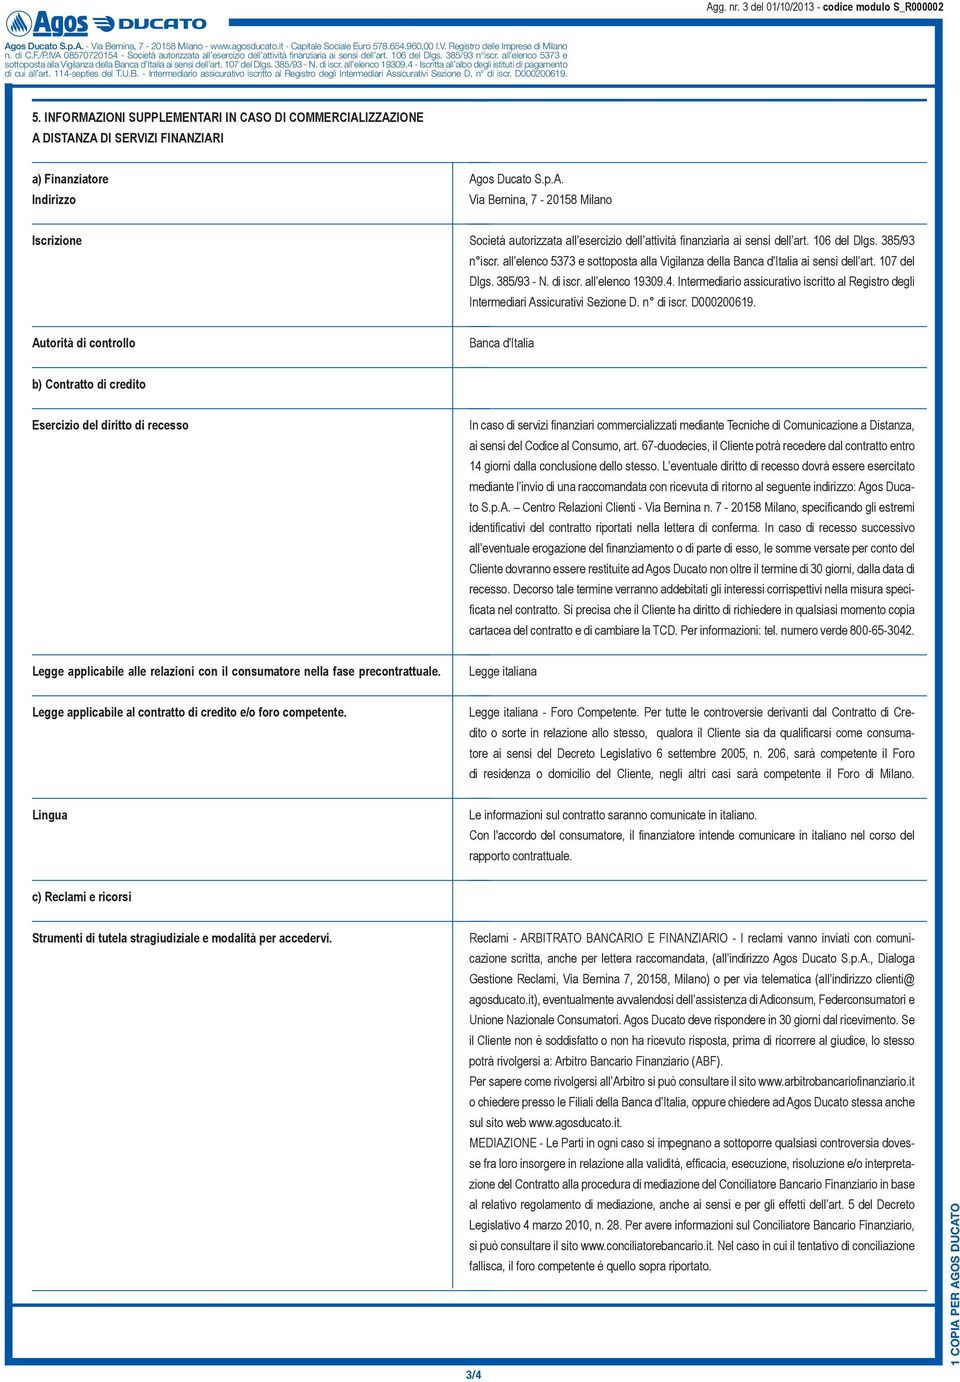 Intermediario assicurativo iscritto al Registro degli Intermediari Assicurativi Sezione D. n di iscr. D000200619.